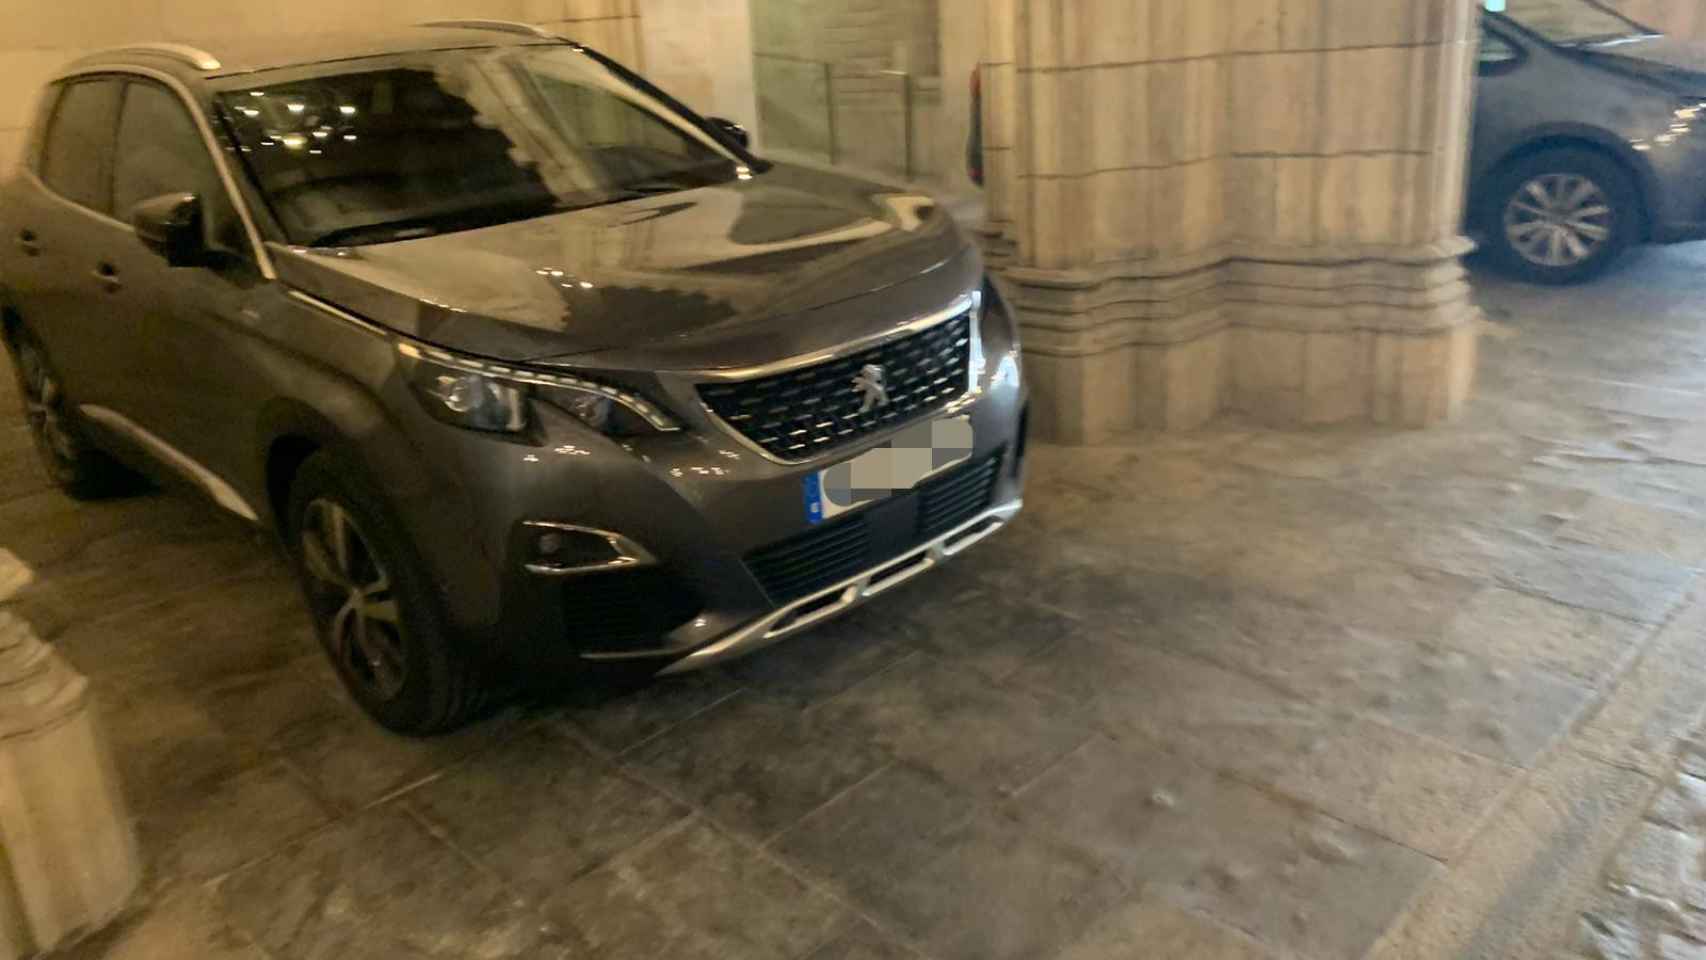 El nuevo coche oficial de Ada Colau en Barcelona, comprado en plena crisis / CG